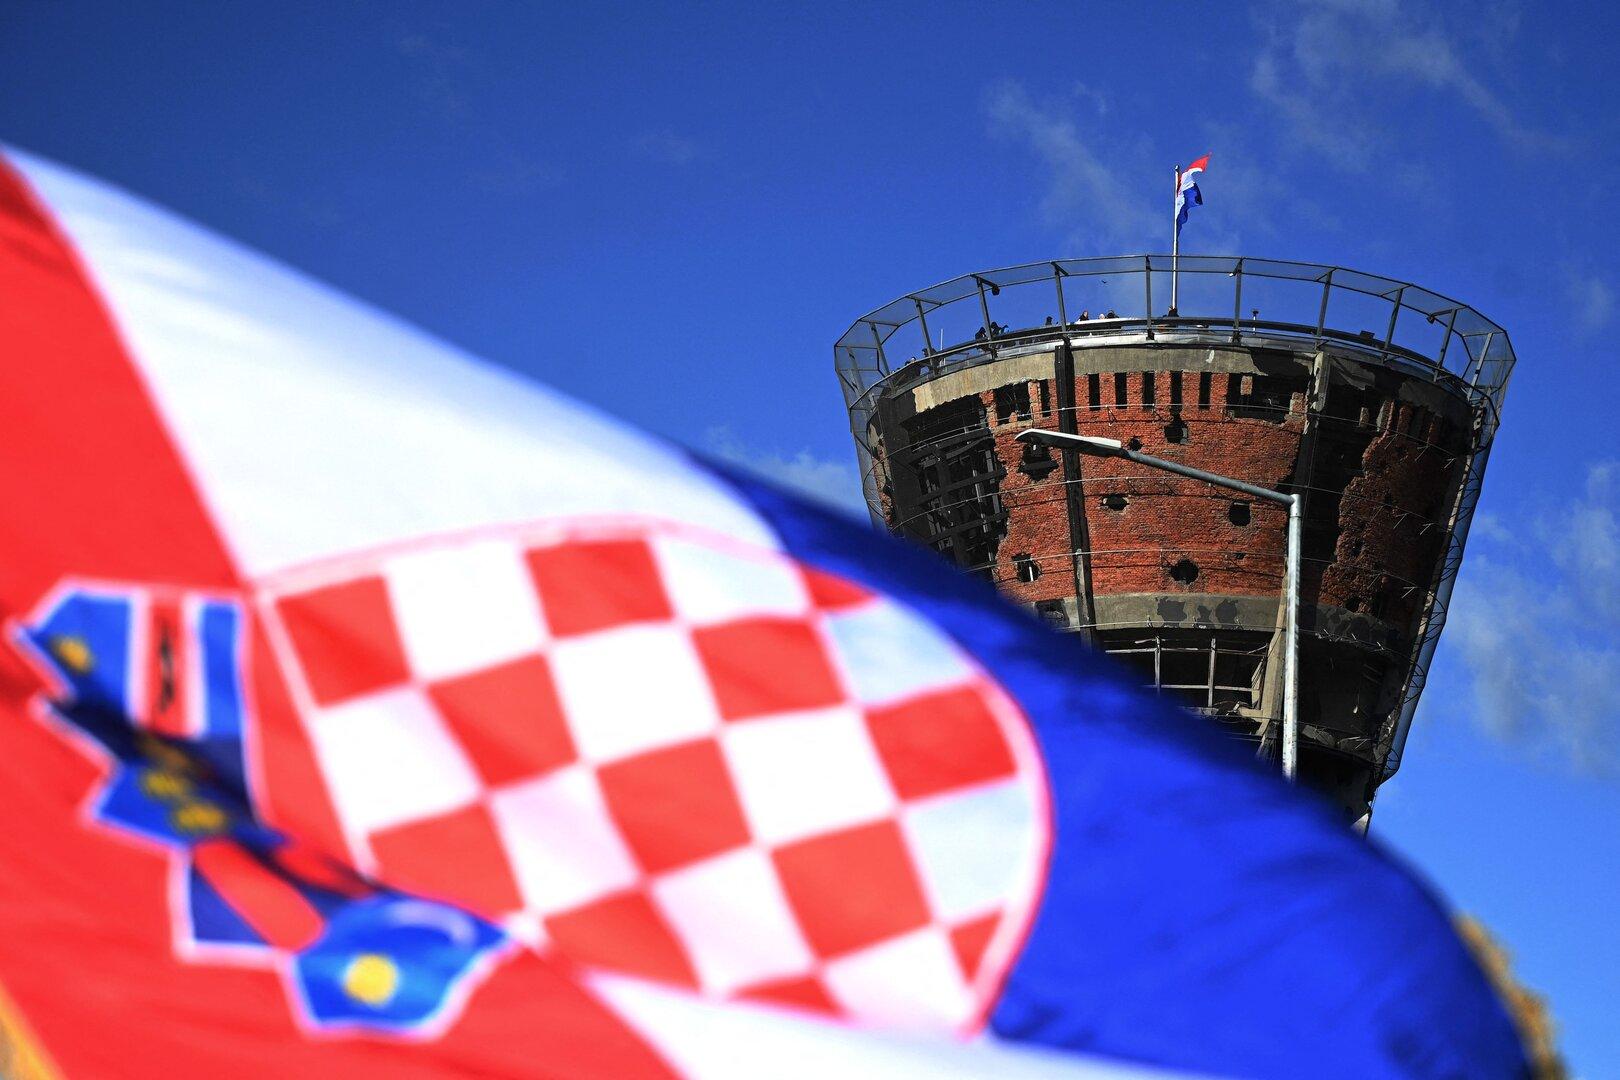 Partei von rechtsextremem Schlager-Star regiert in Kroatien